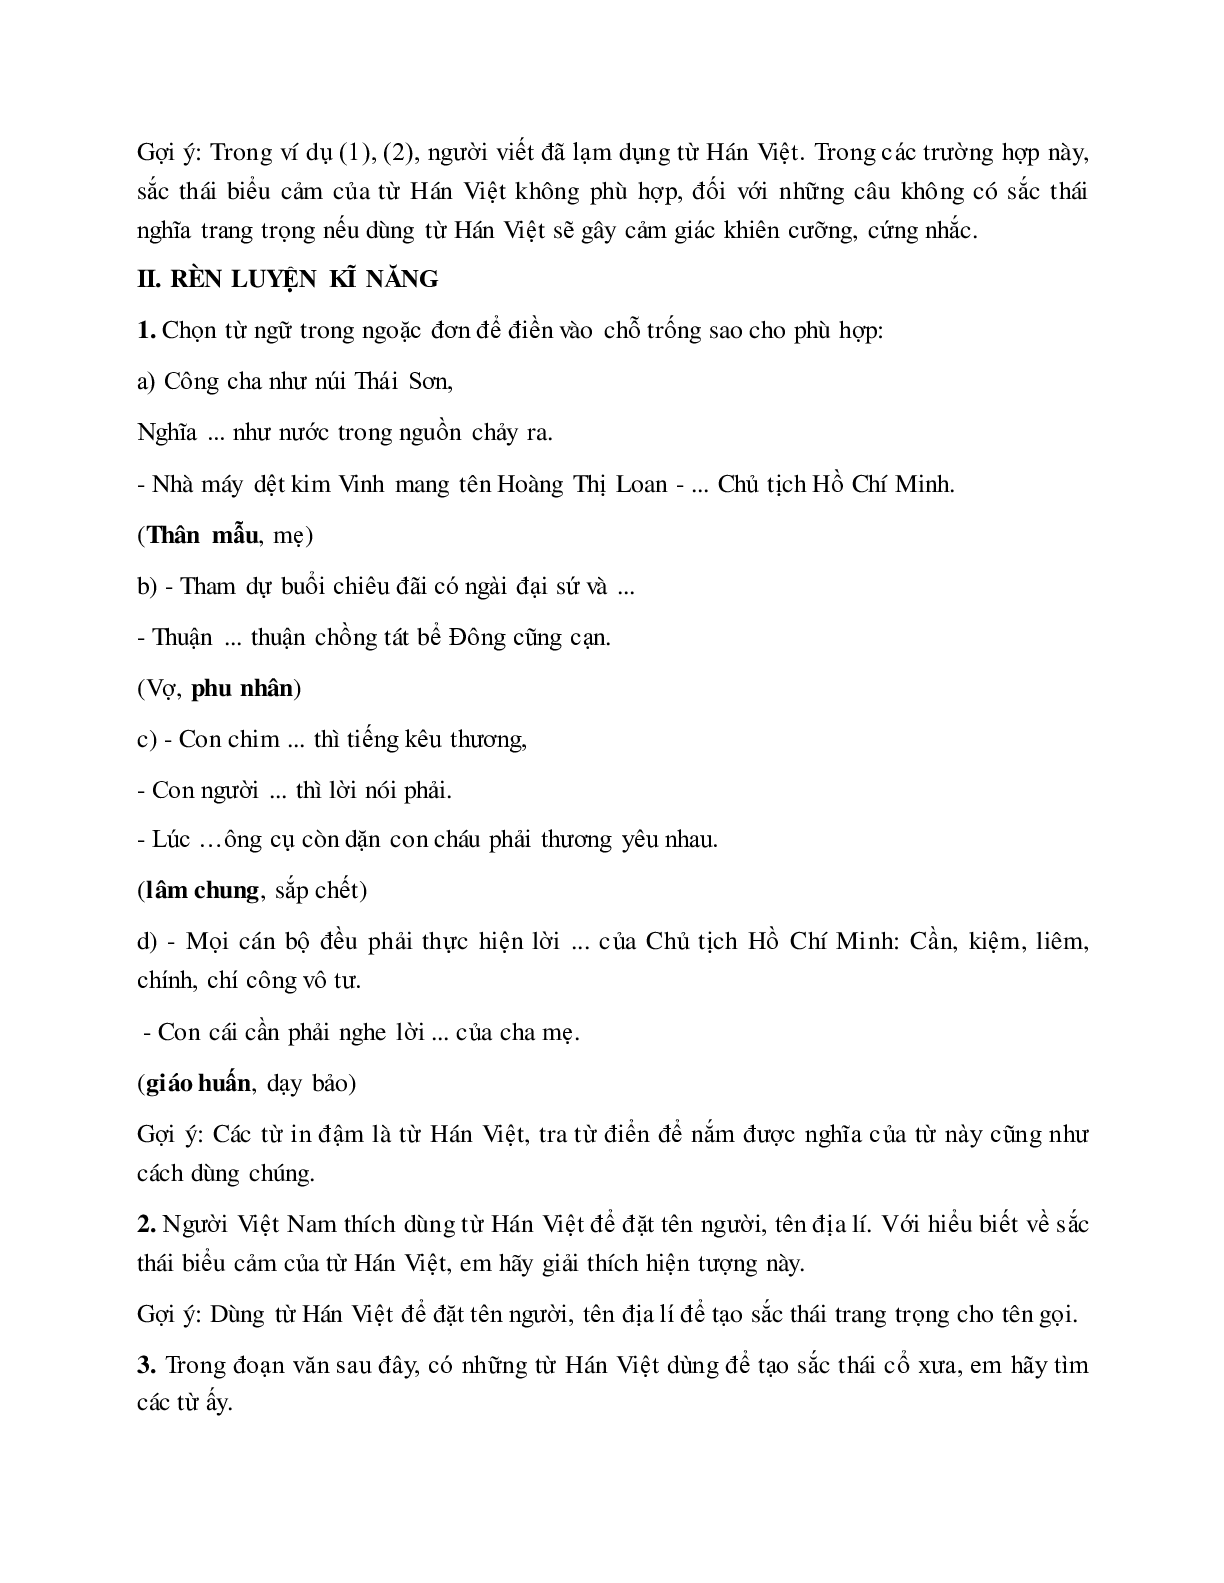 Soạn bài Từ Hán việt (tiếp theo) - ngắn nhất Soạn văn 7 (trang 4)